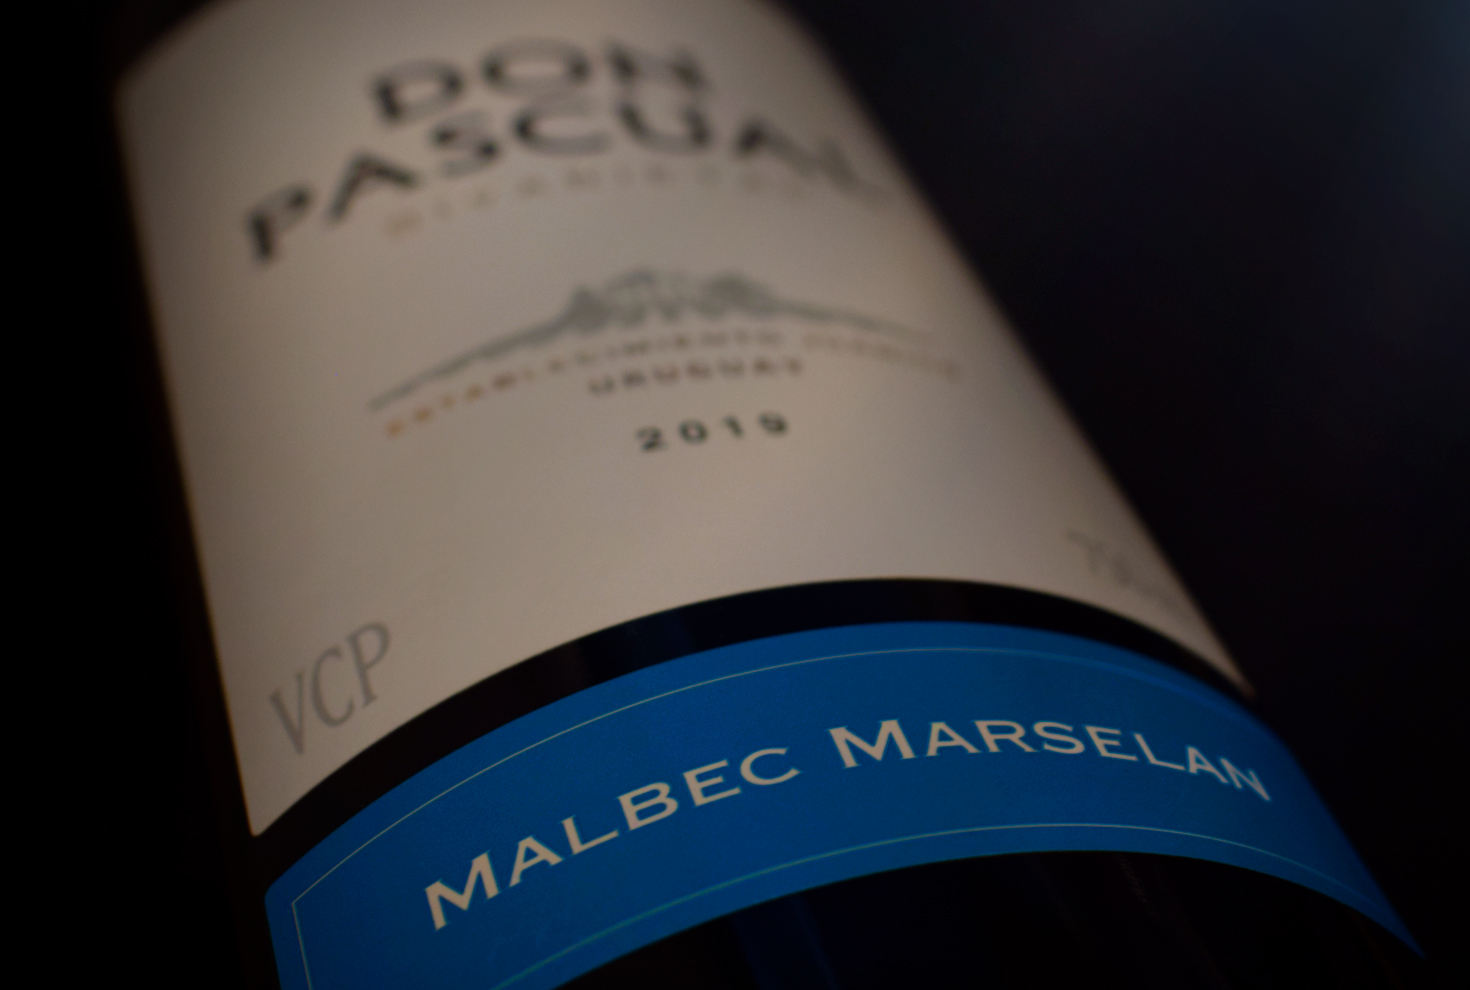 Malbec Marselán – El nuevo lanzamiento de Don Pascual